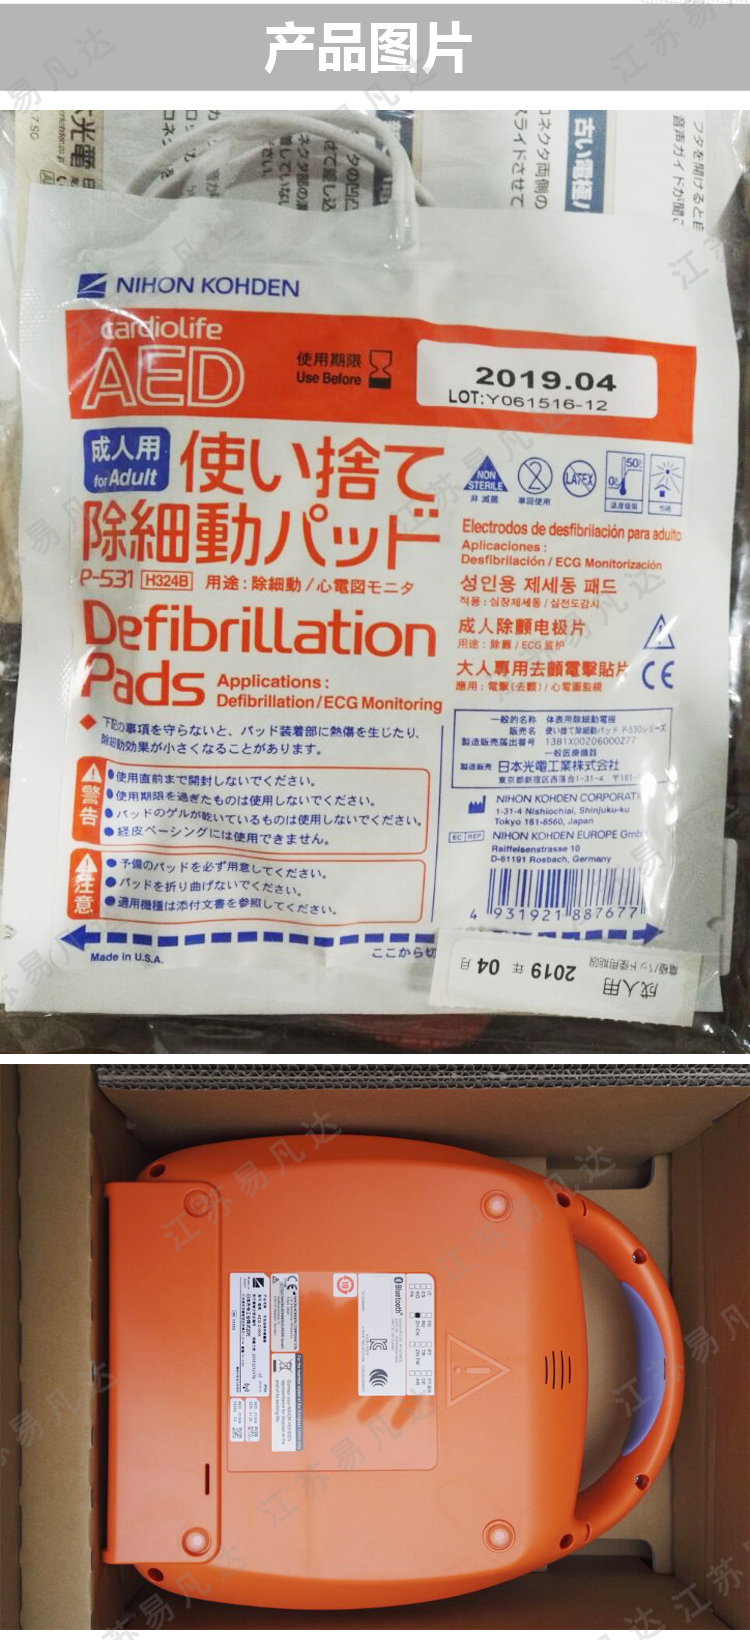 日本光电AED-2150K自动体外除颤仪、现货供应原厂原装进口便携式除颤器AED